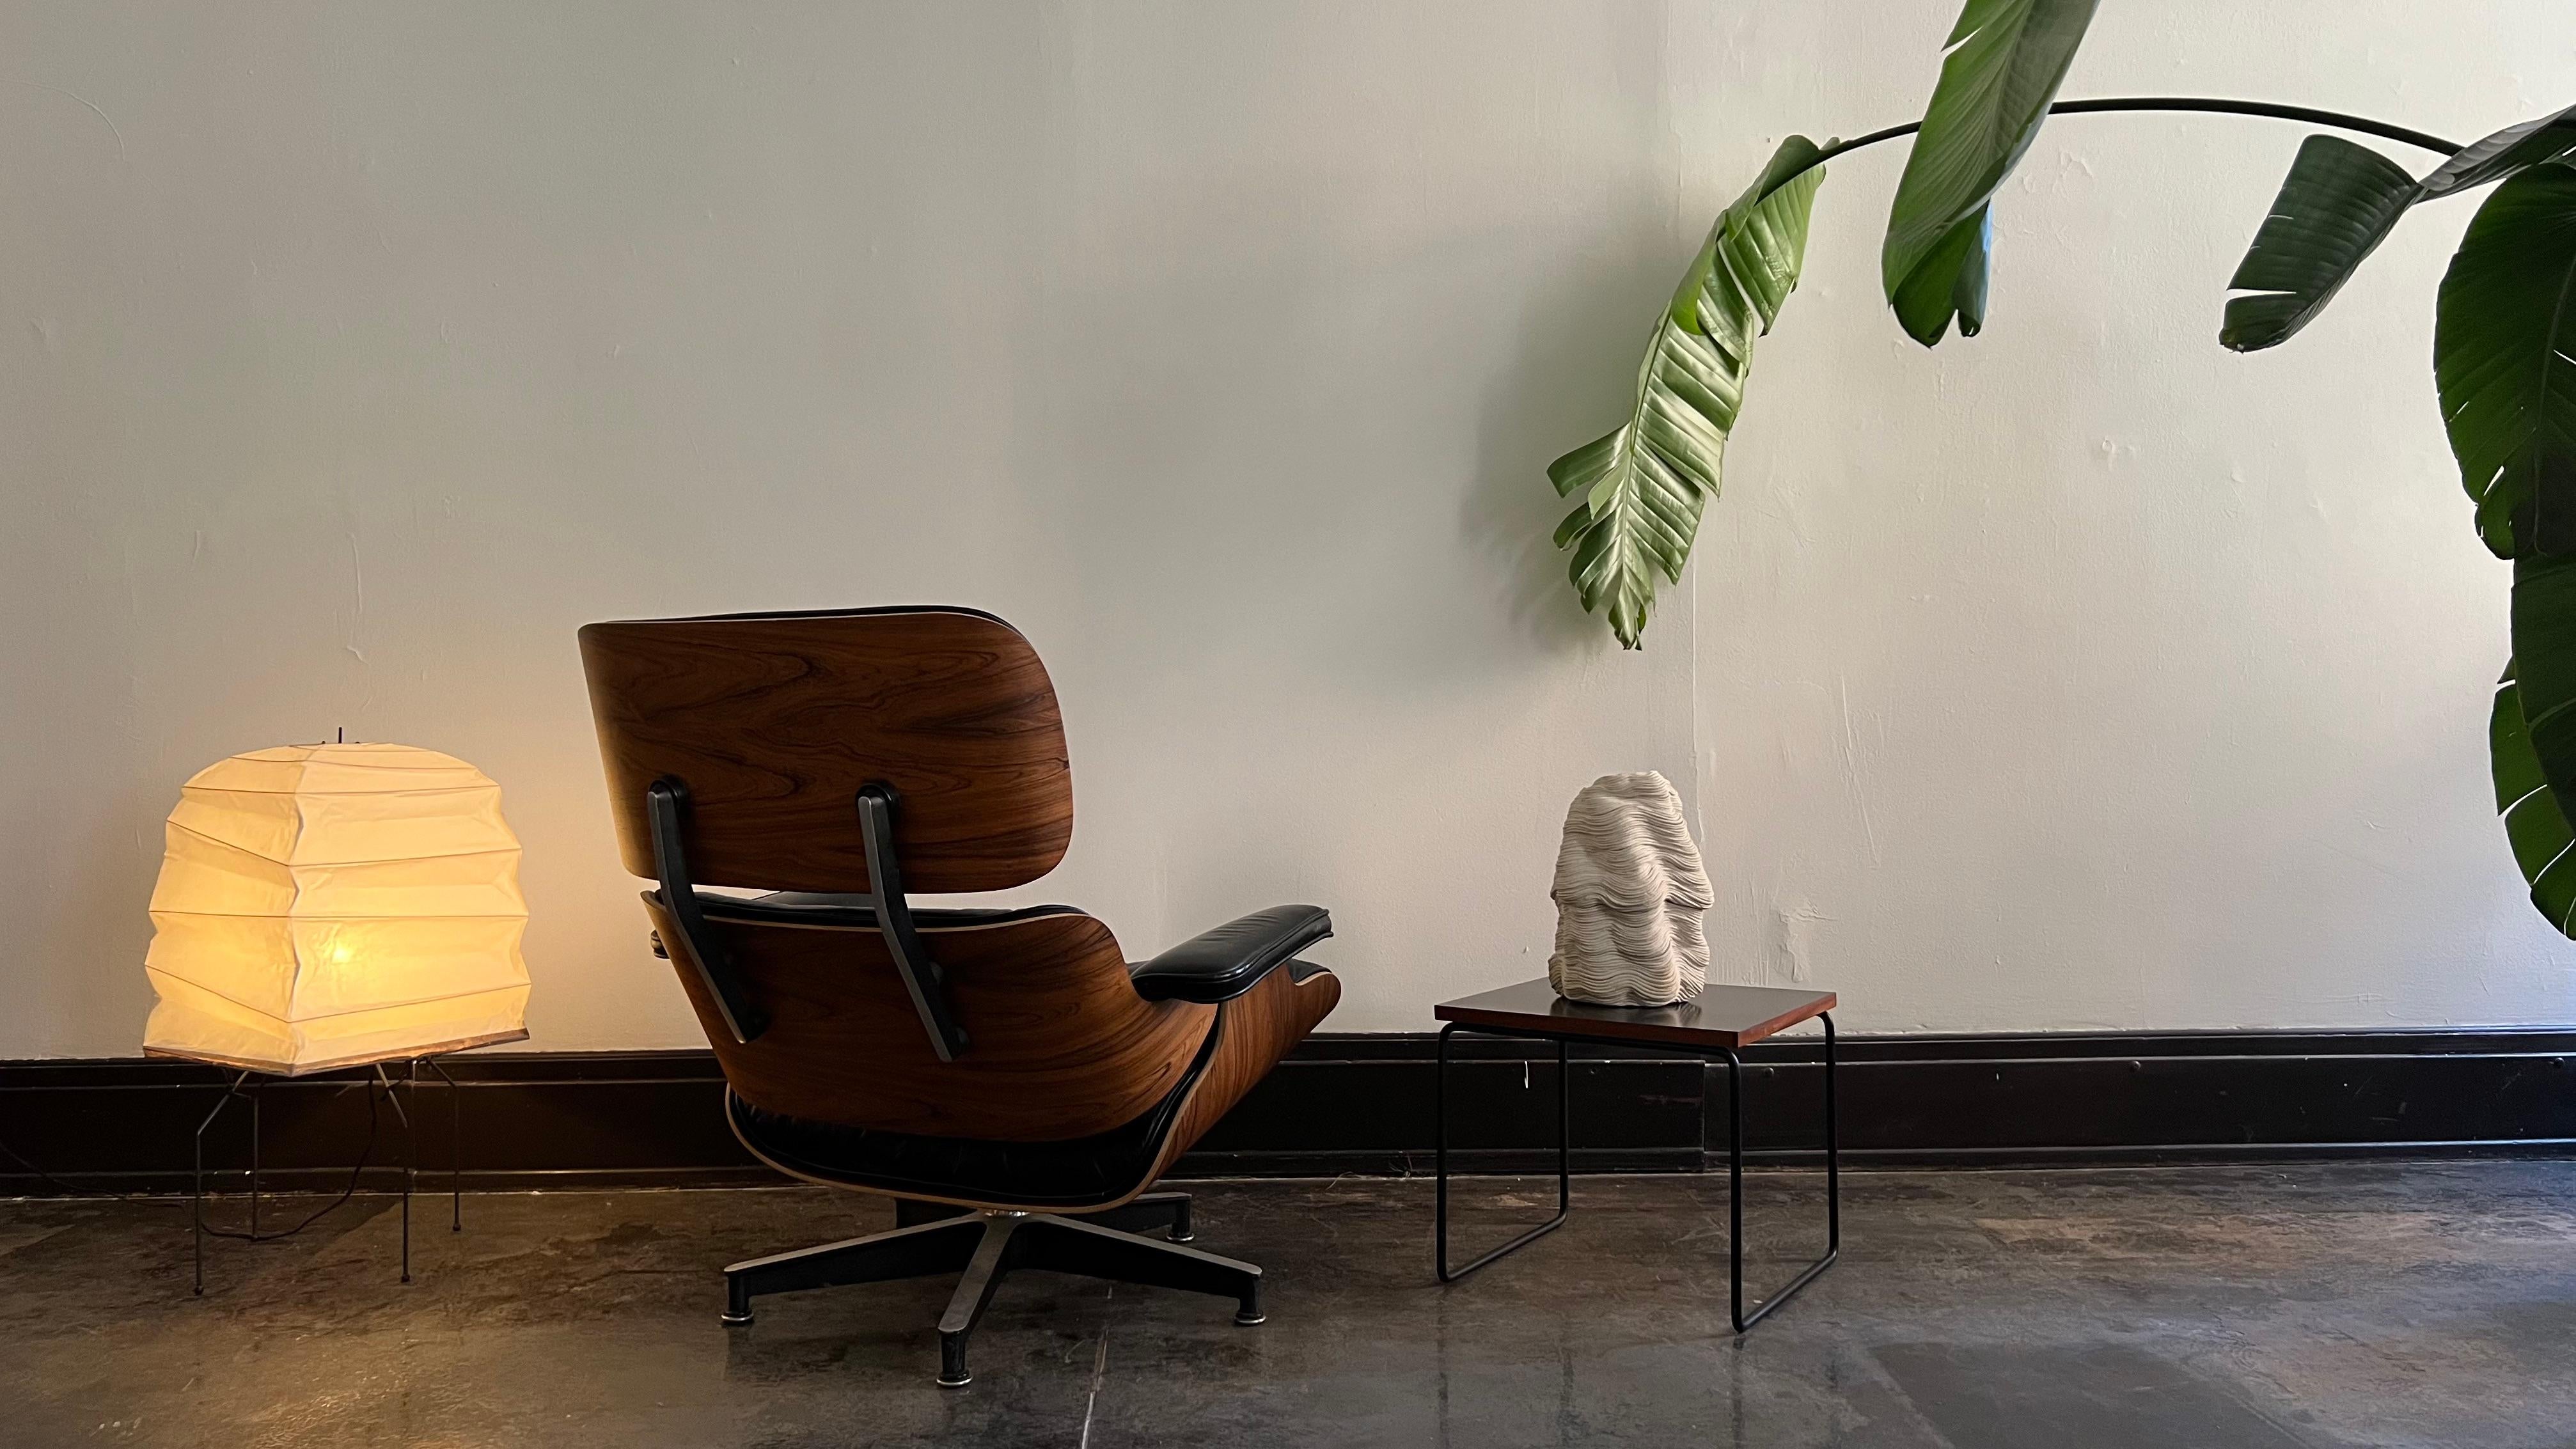 C'est une véritable icône. La chaise Eames 670, plus connue sous le nom de Eames Lounge Chair, est l'œuvre des maîtres modernistes Ray et Charles Eames. Conçu en 1956, il n'a connu qu'une poignée d'itérations. Cet exemplaire est un modèle de